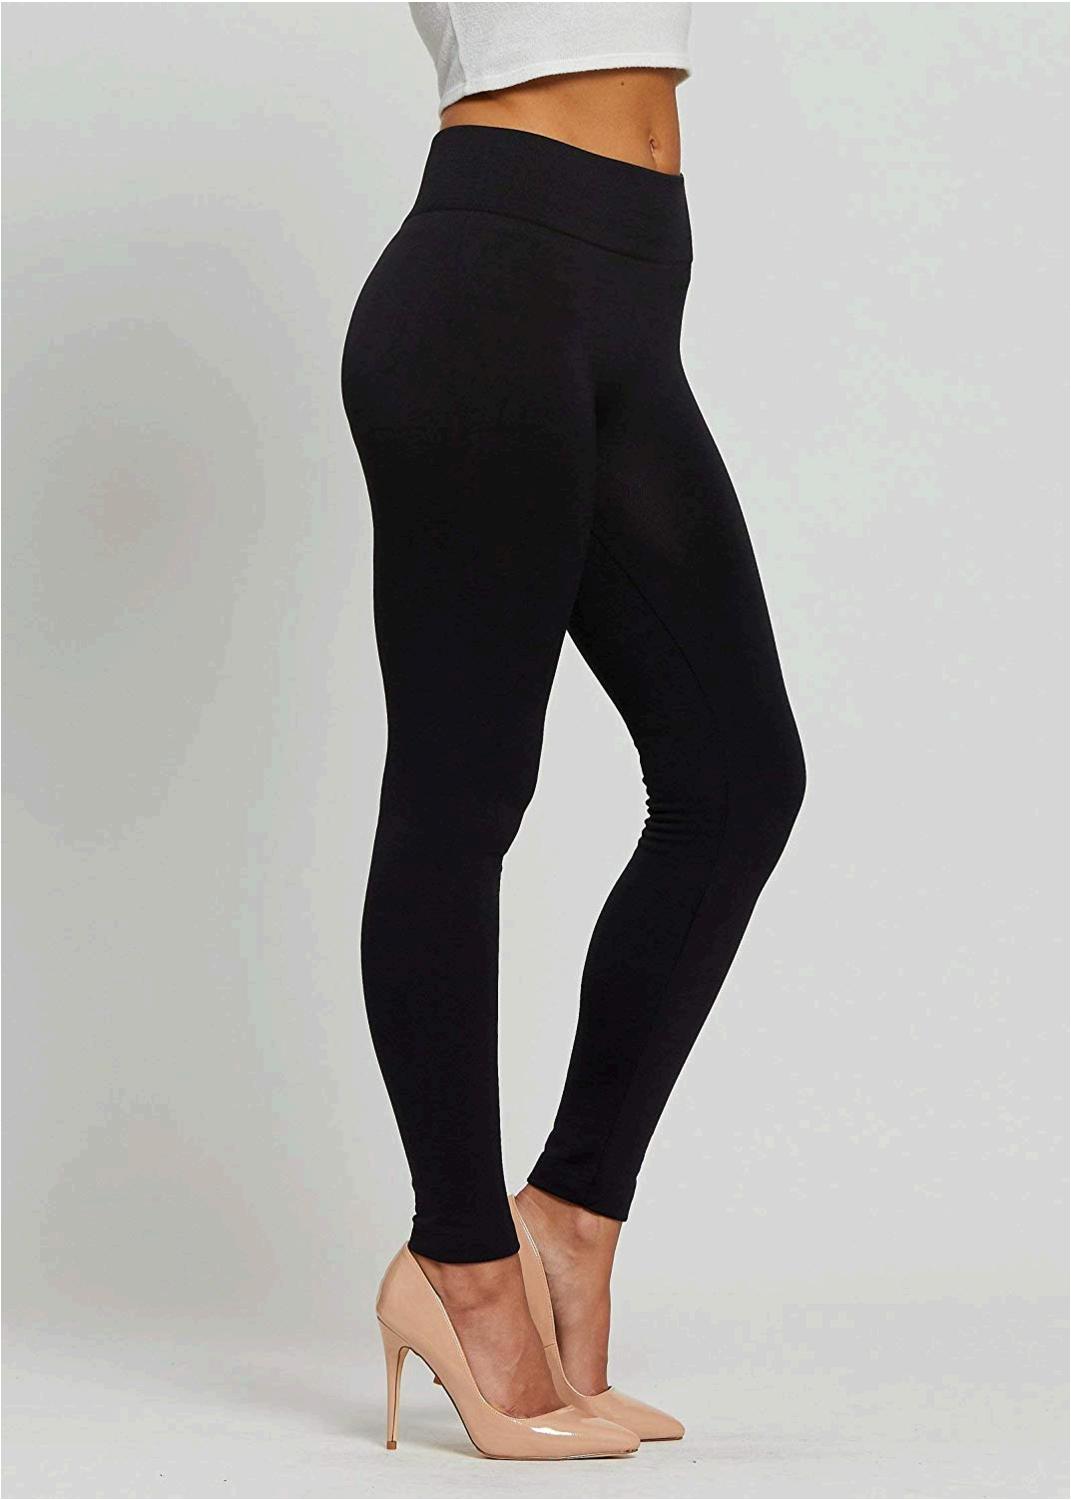 Buy Ultra Soft Leggings for Women - Regular and Plus Sizes - 20